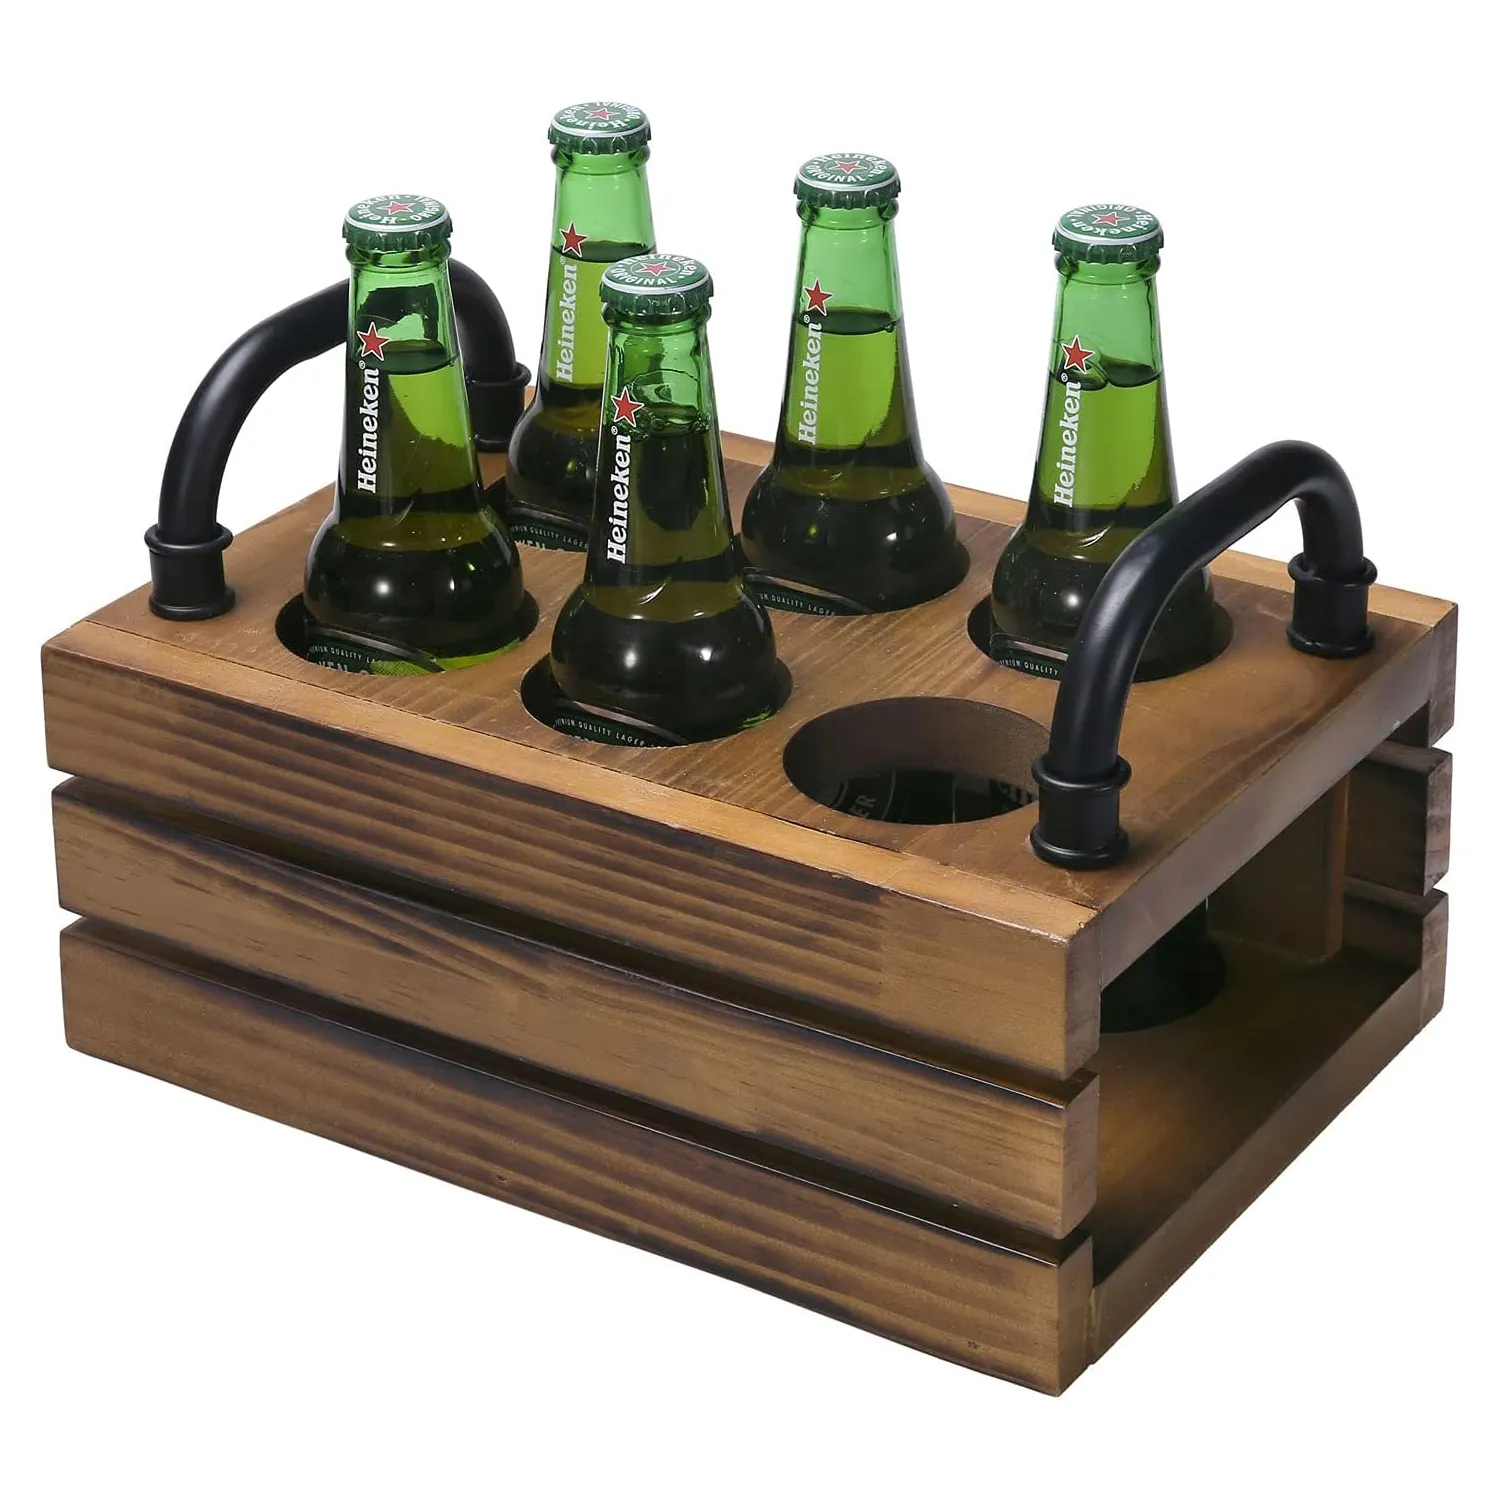 กล่องใส่ขวดเบียร์ไม้แบบชนบท6 SOT กล่องใส่เครื่องดื่มที่ทำจากไม้แคดดี้พร้อมที่จับโลหะสีดำ